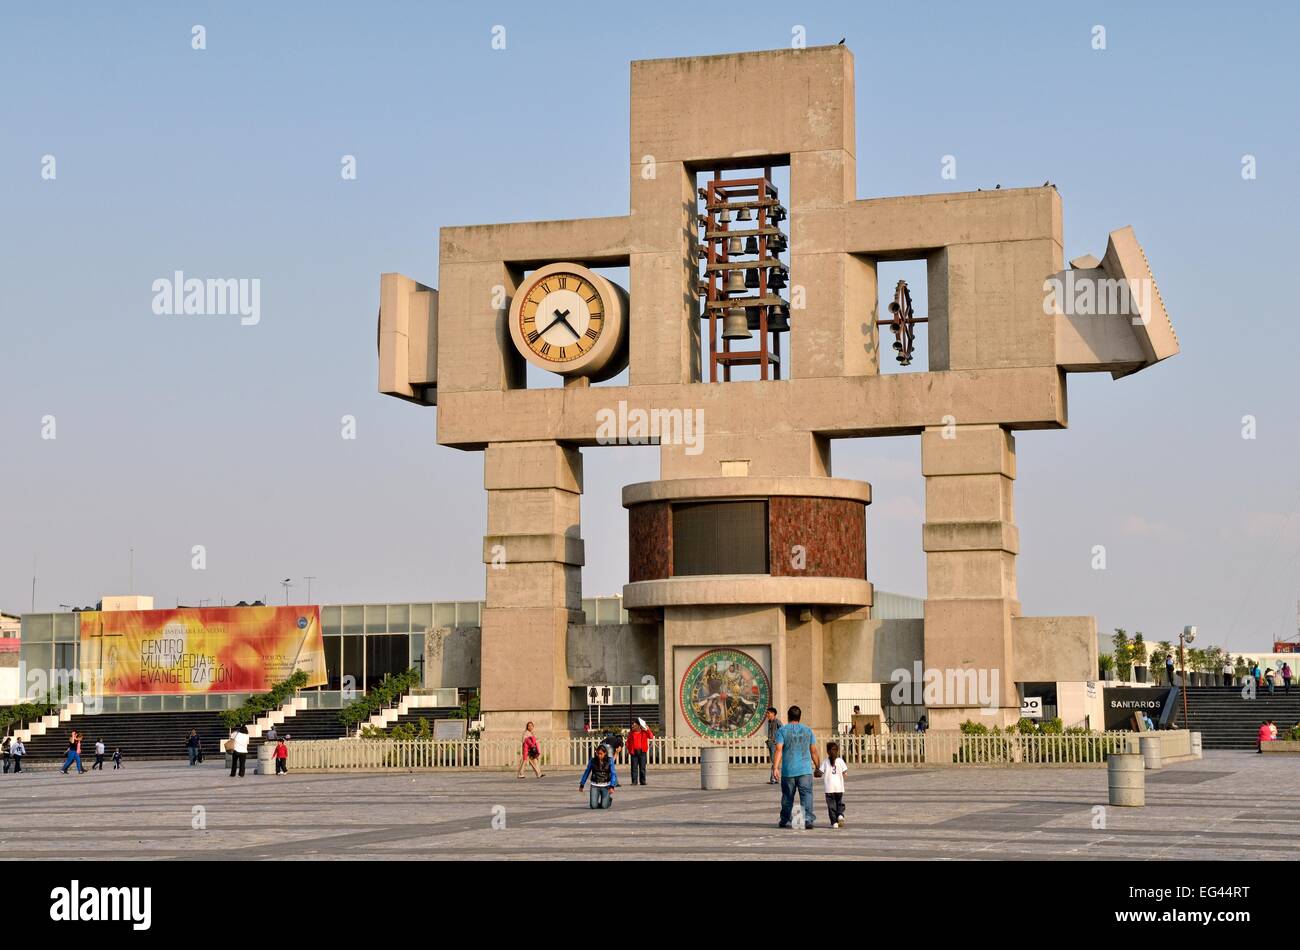 Campanile con orologio astronomico, Atrio de America, Città del Messico, del Distretto Federale, Messico Foto Stock